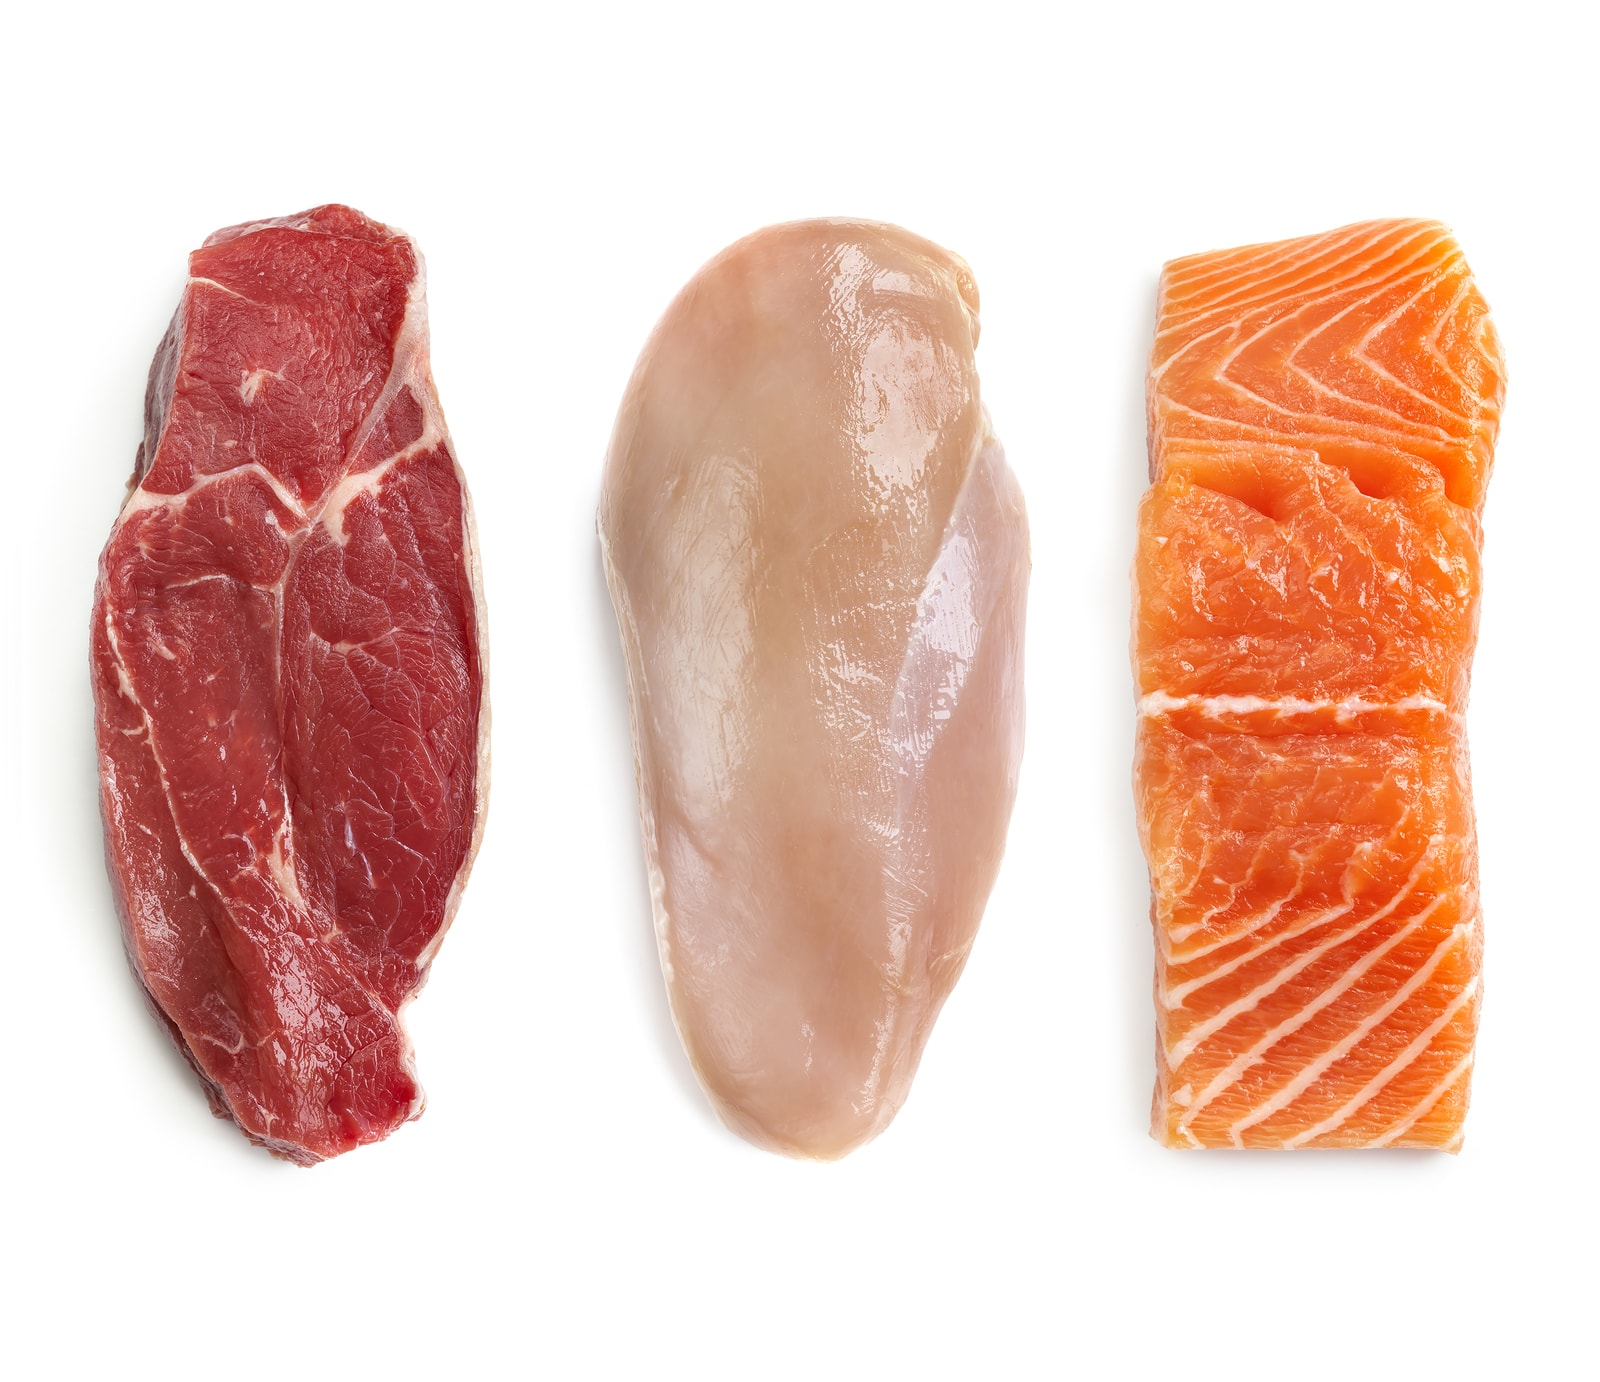 Białe i czerwone mięso - wpływ na zdrowie i różnice